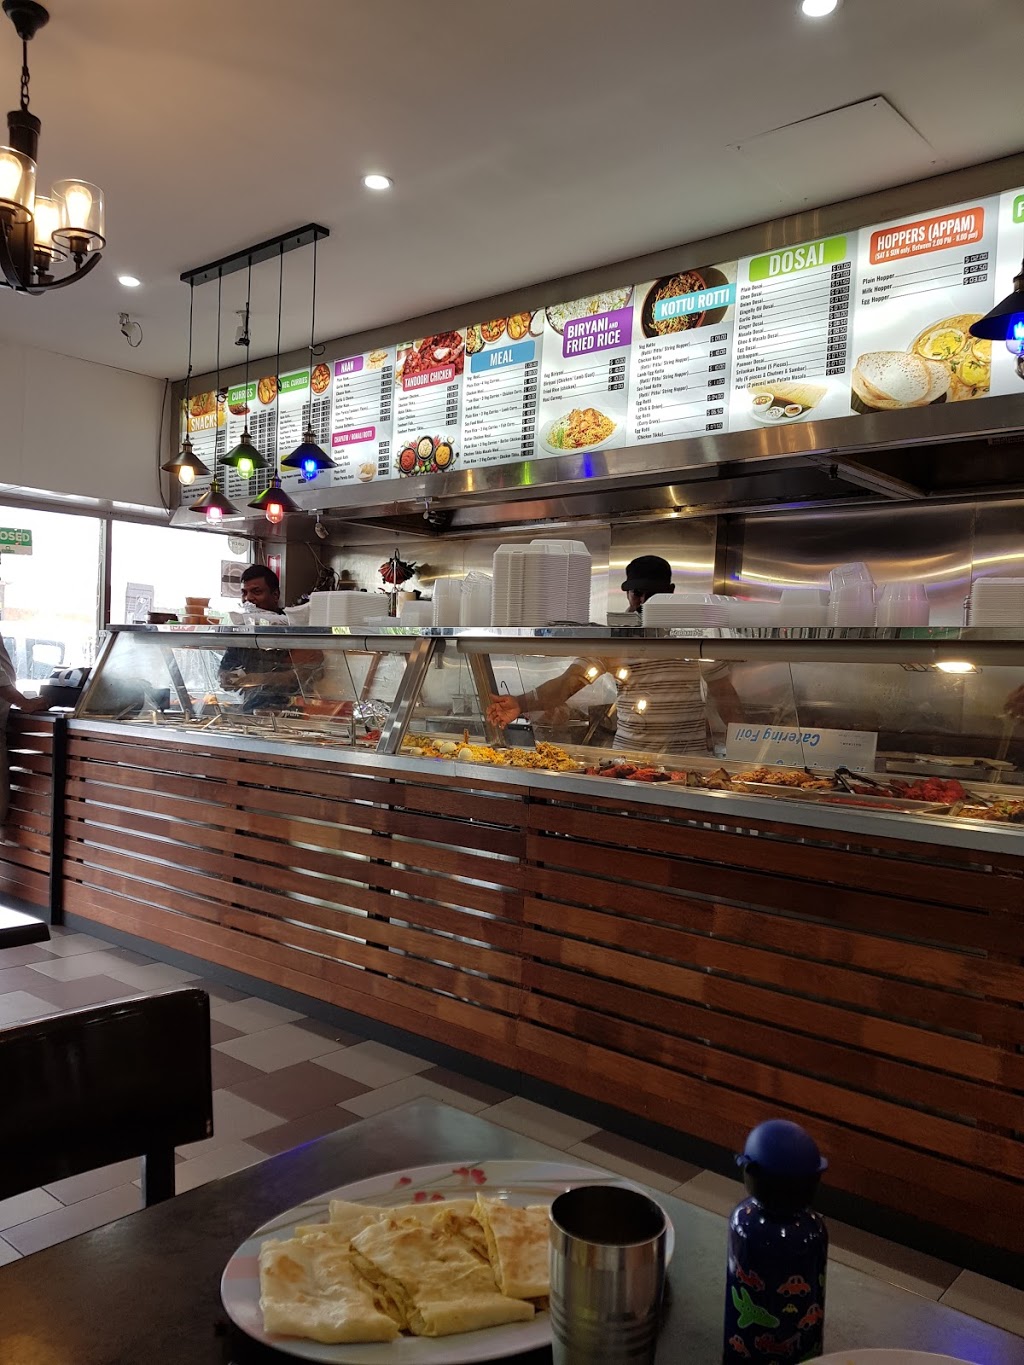 SunRise Indian & Srilankan Restaurant | restaurant | 41 Dunmore St, Wentworthville NSW 2145, Australia | 0286775753 OR +61 2 8677 5753